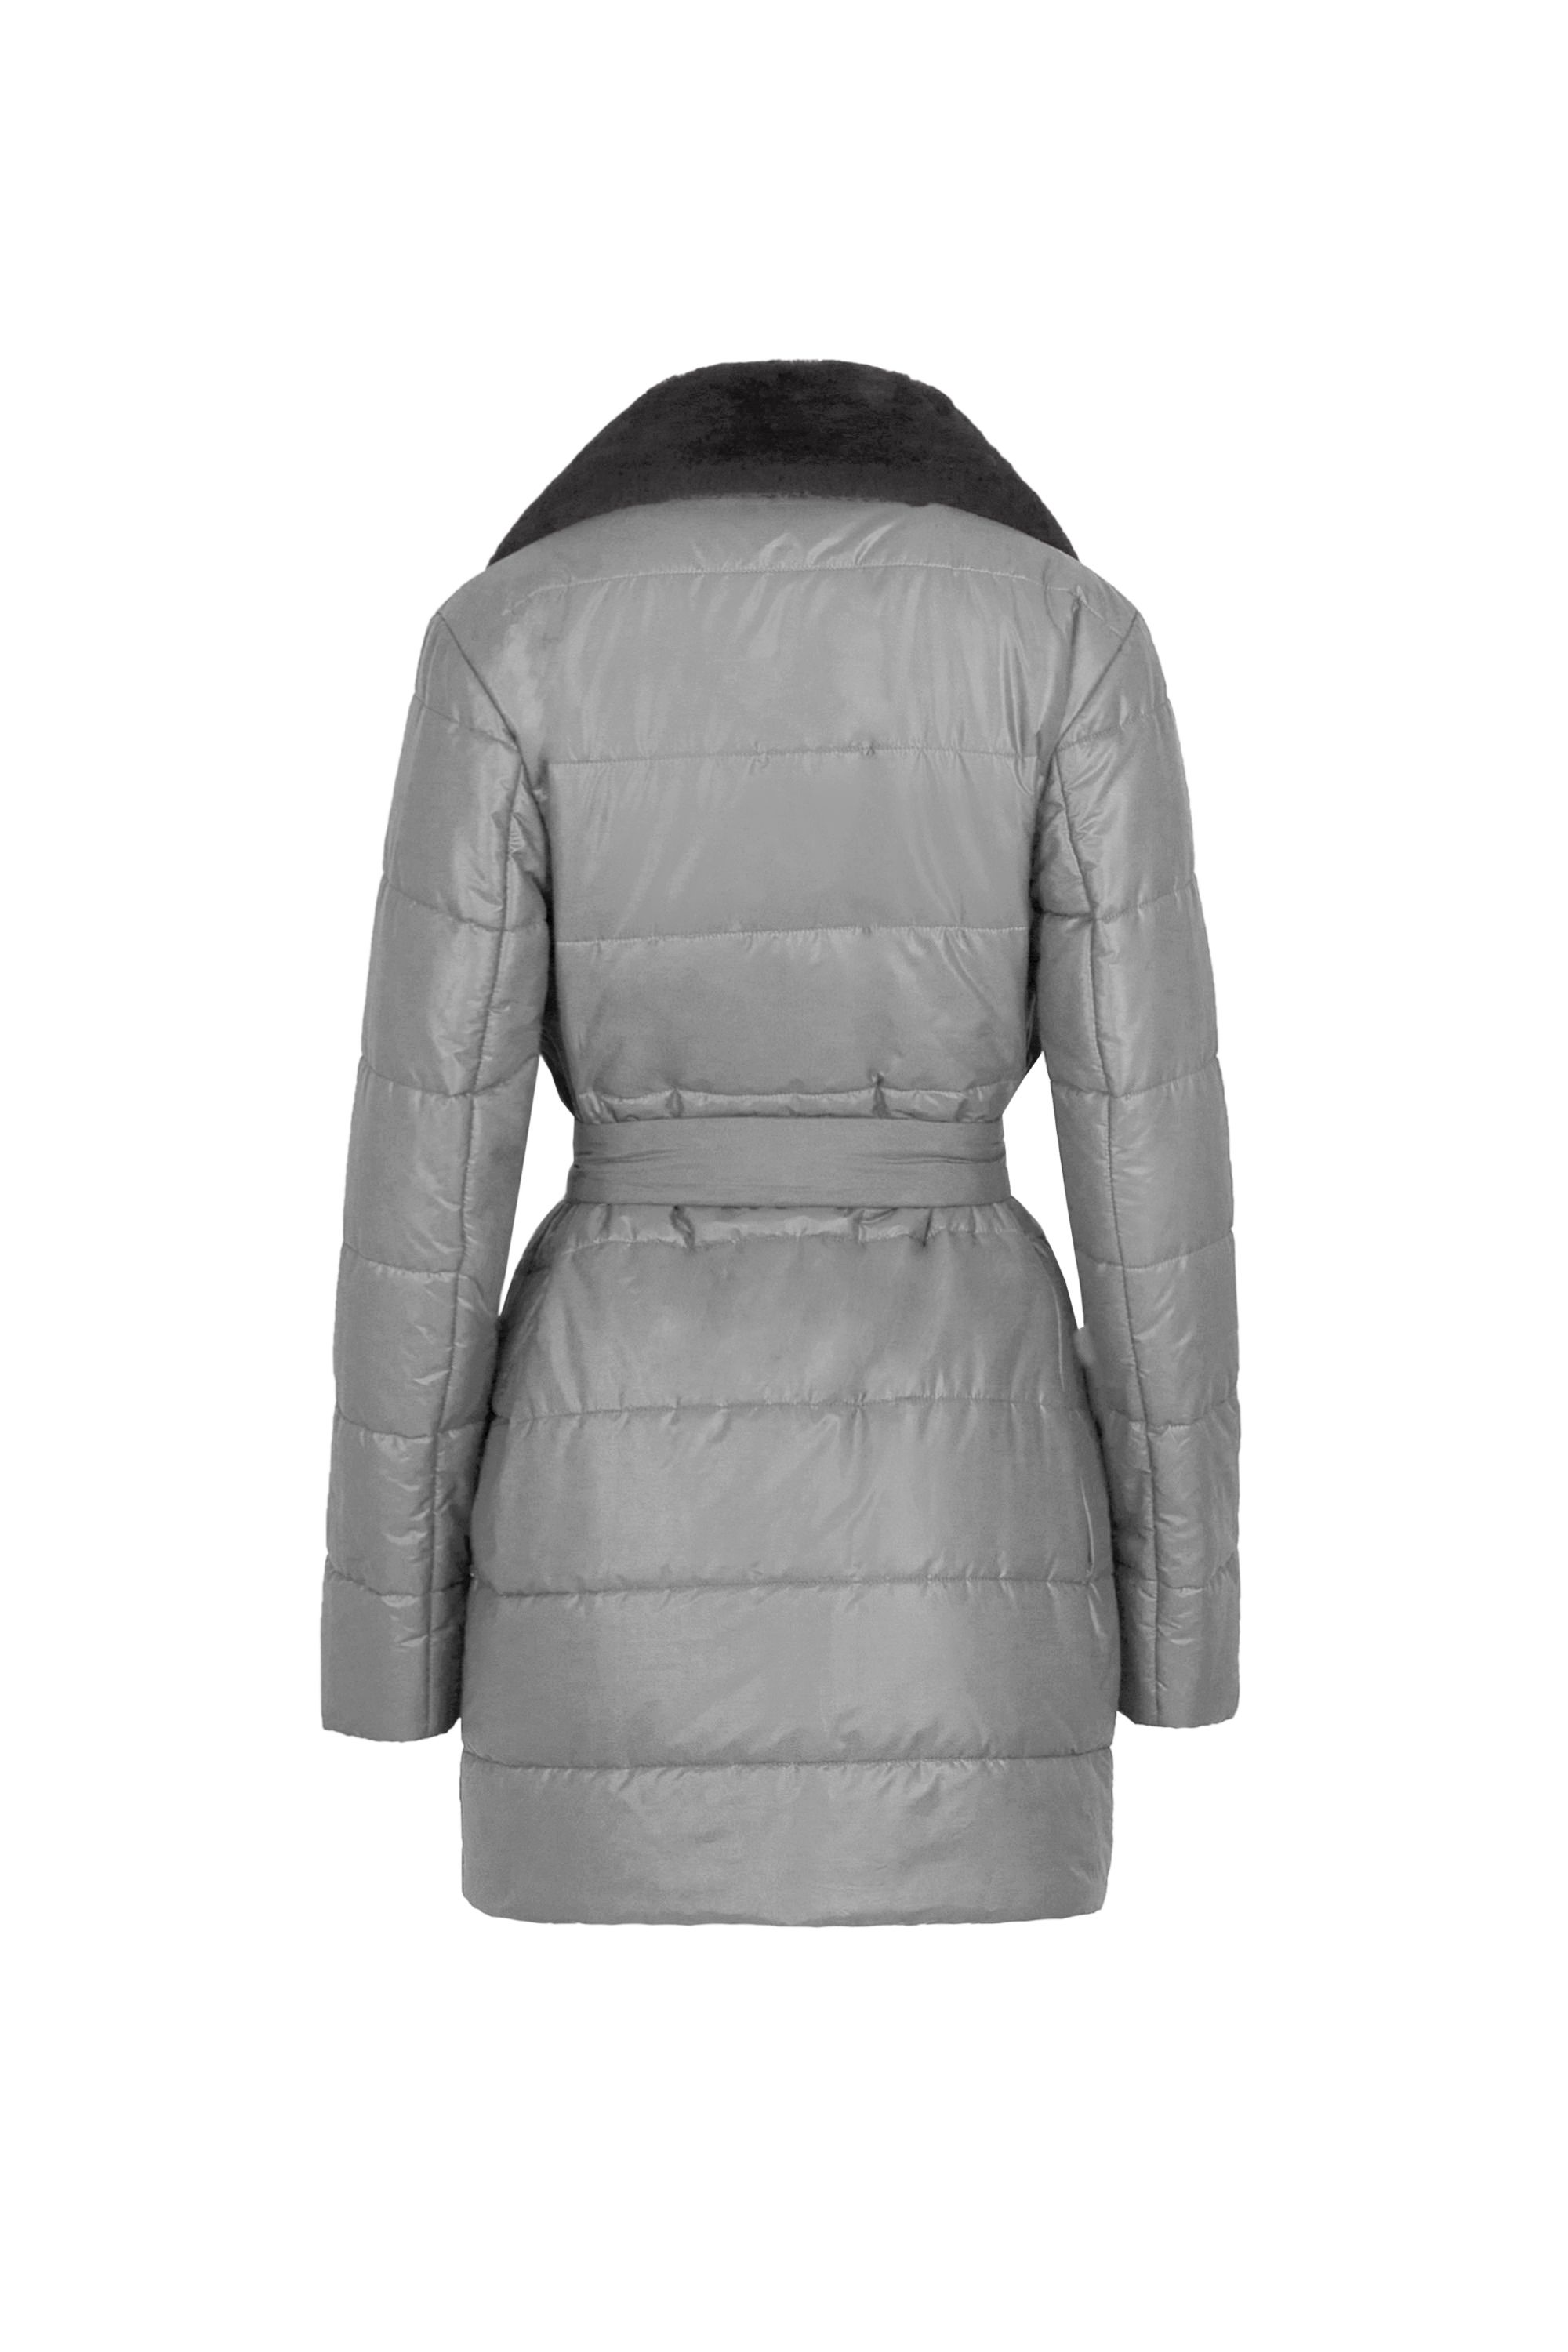 Пальто женское плащевое утепленное 5S-13037-1. Фото 6.